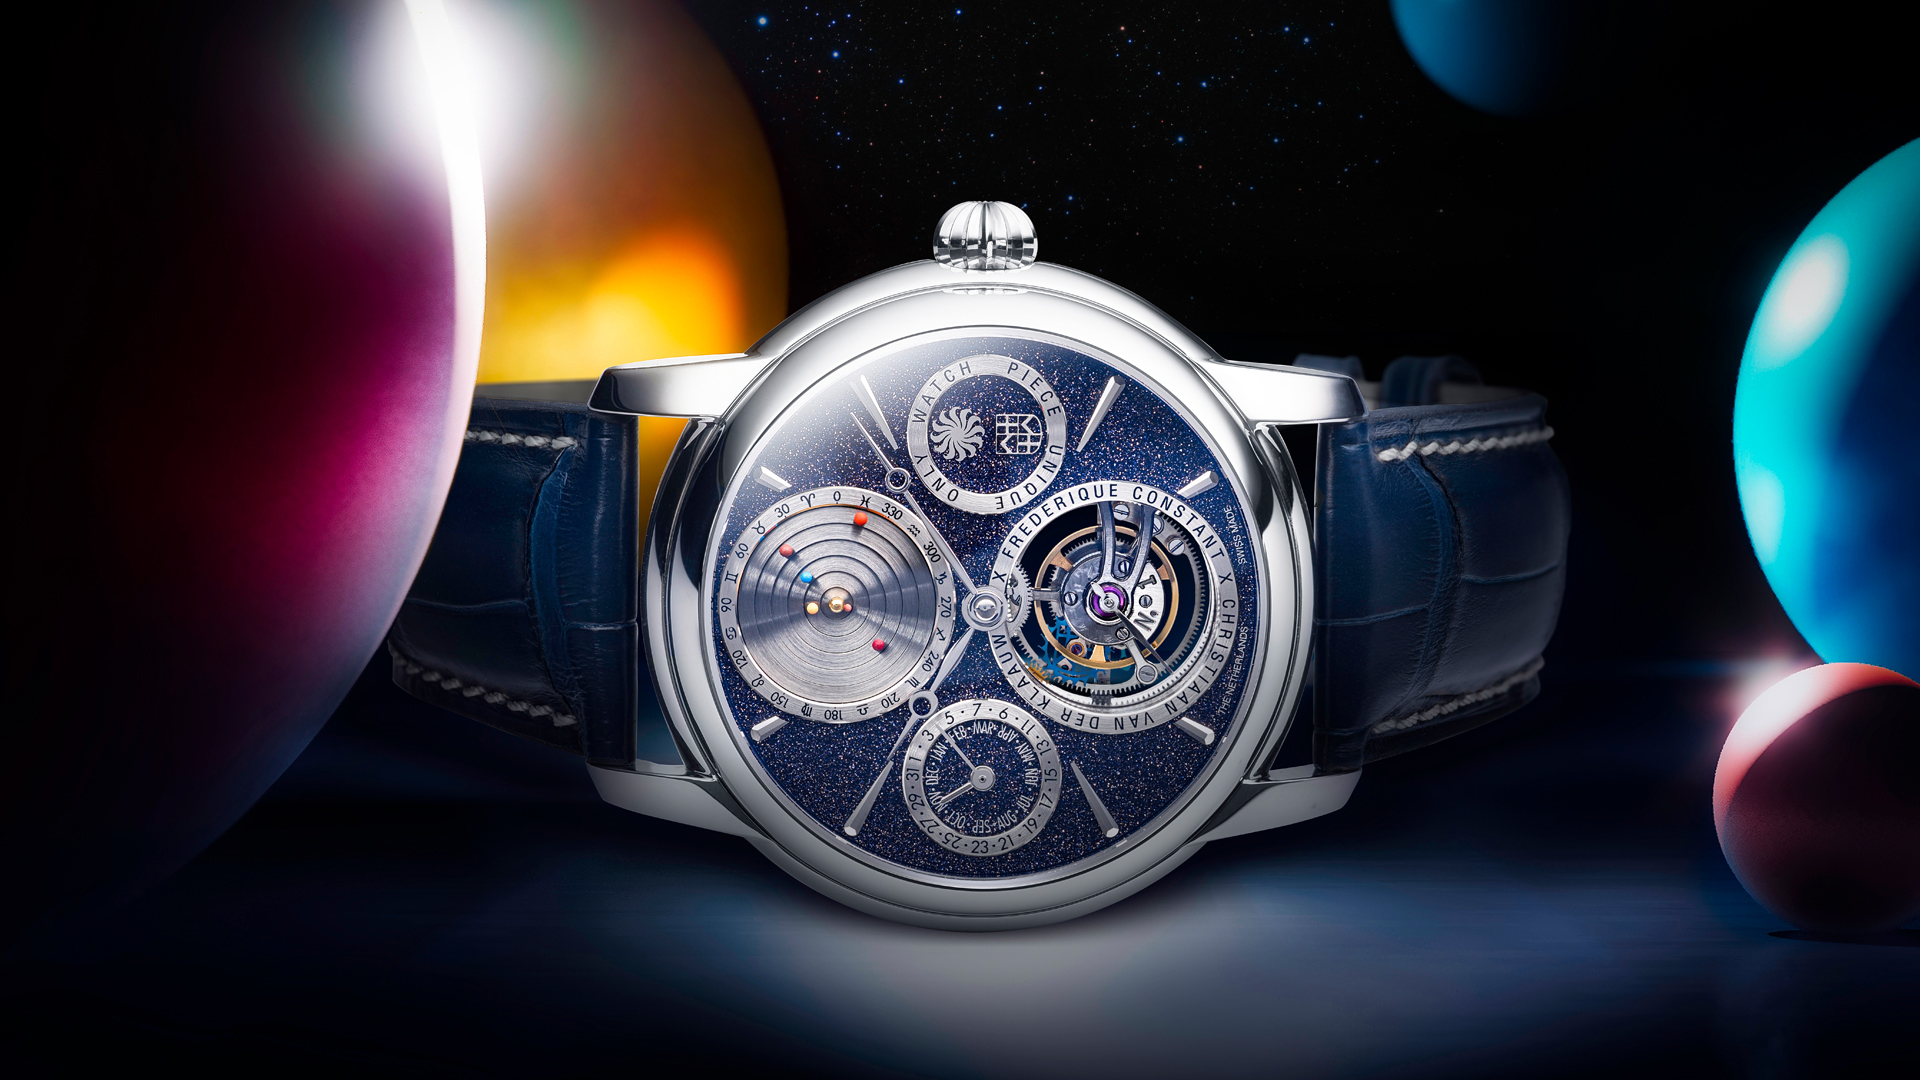 Zusammen mit Christiaan van der Klaauw hat Frederique Constant eine faszinierende astronomische Anzeige auf das Zifferblatt dieser Uhr gebracht, das kleinste Planetarium der Welt.